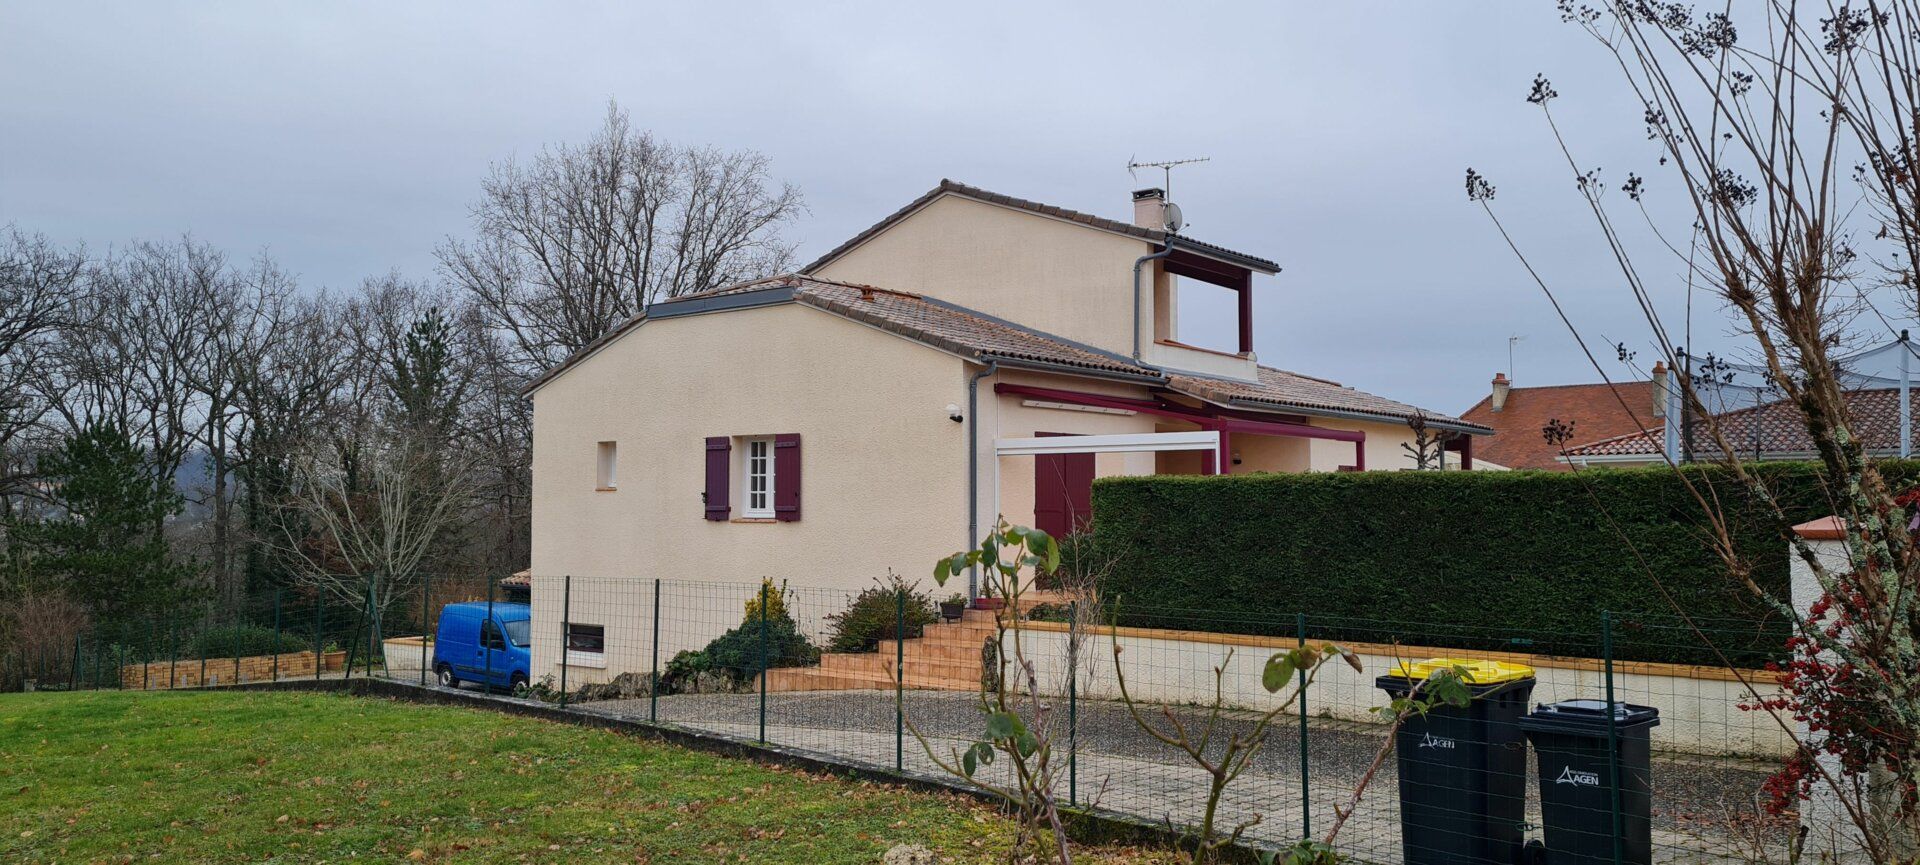 Maison à vendre 5 156m2 à Pont-du-Casse vignette-2